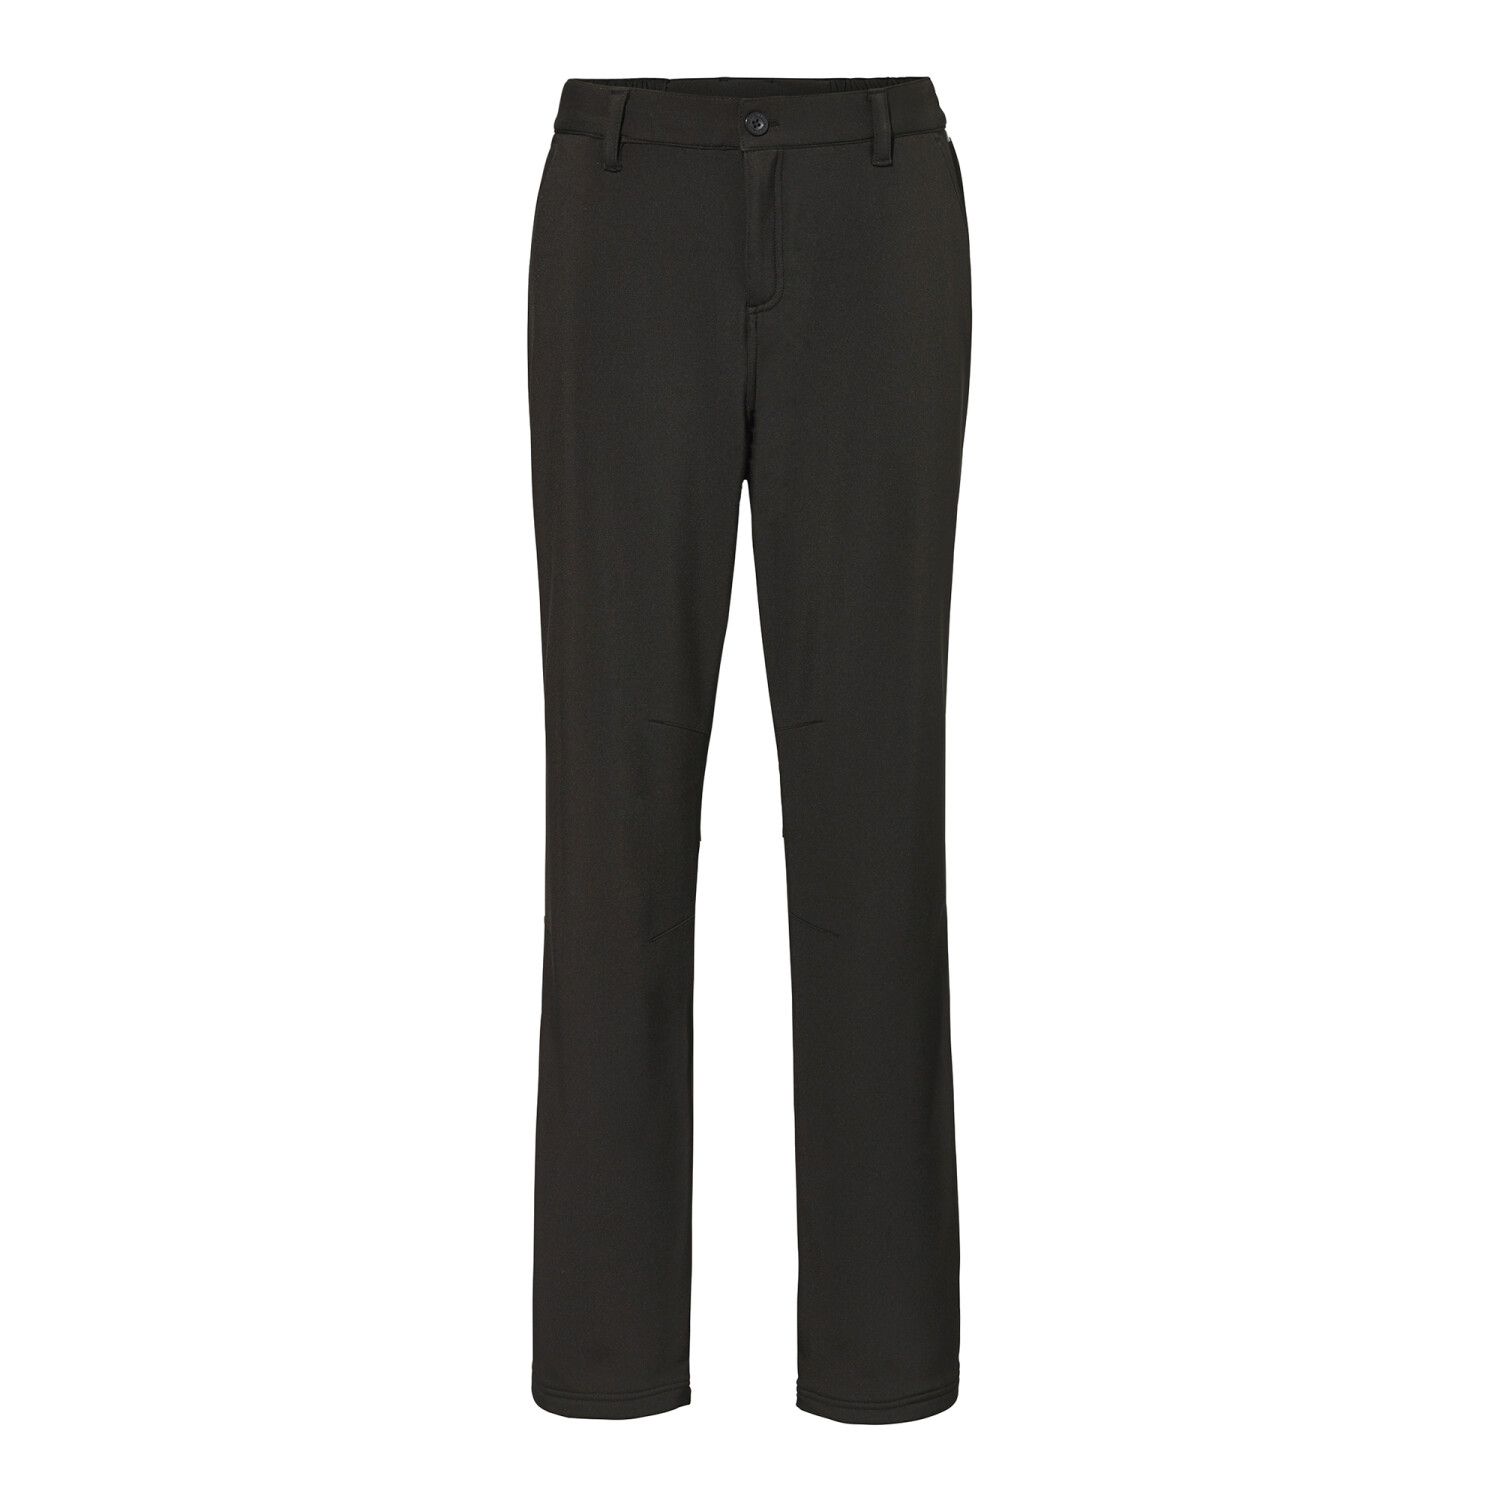 Buy Regatta Fenton Softshell Walking Pants Women (RWJ177) from £19.95  (Today) – Best Deals on